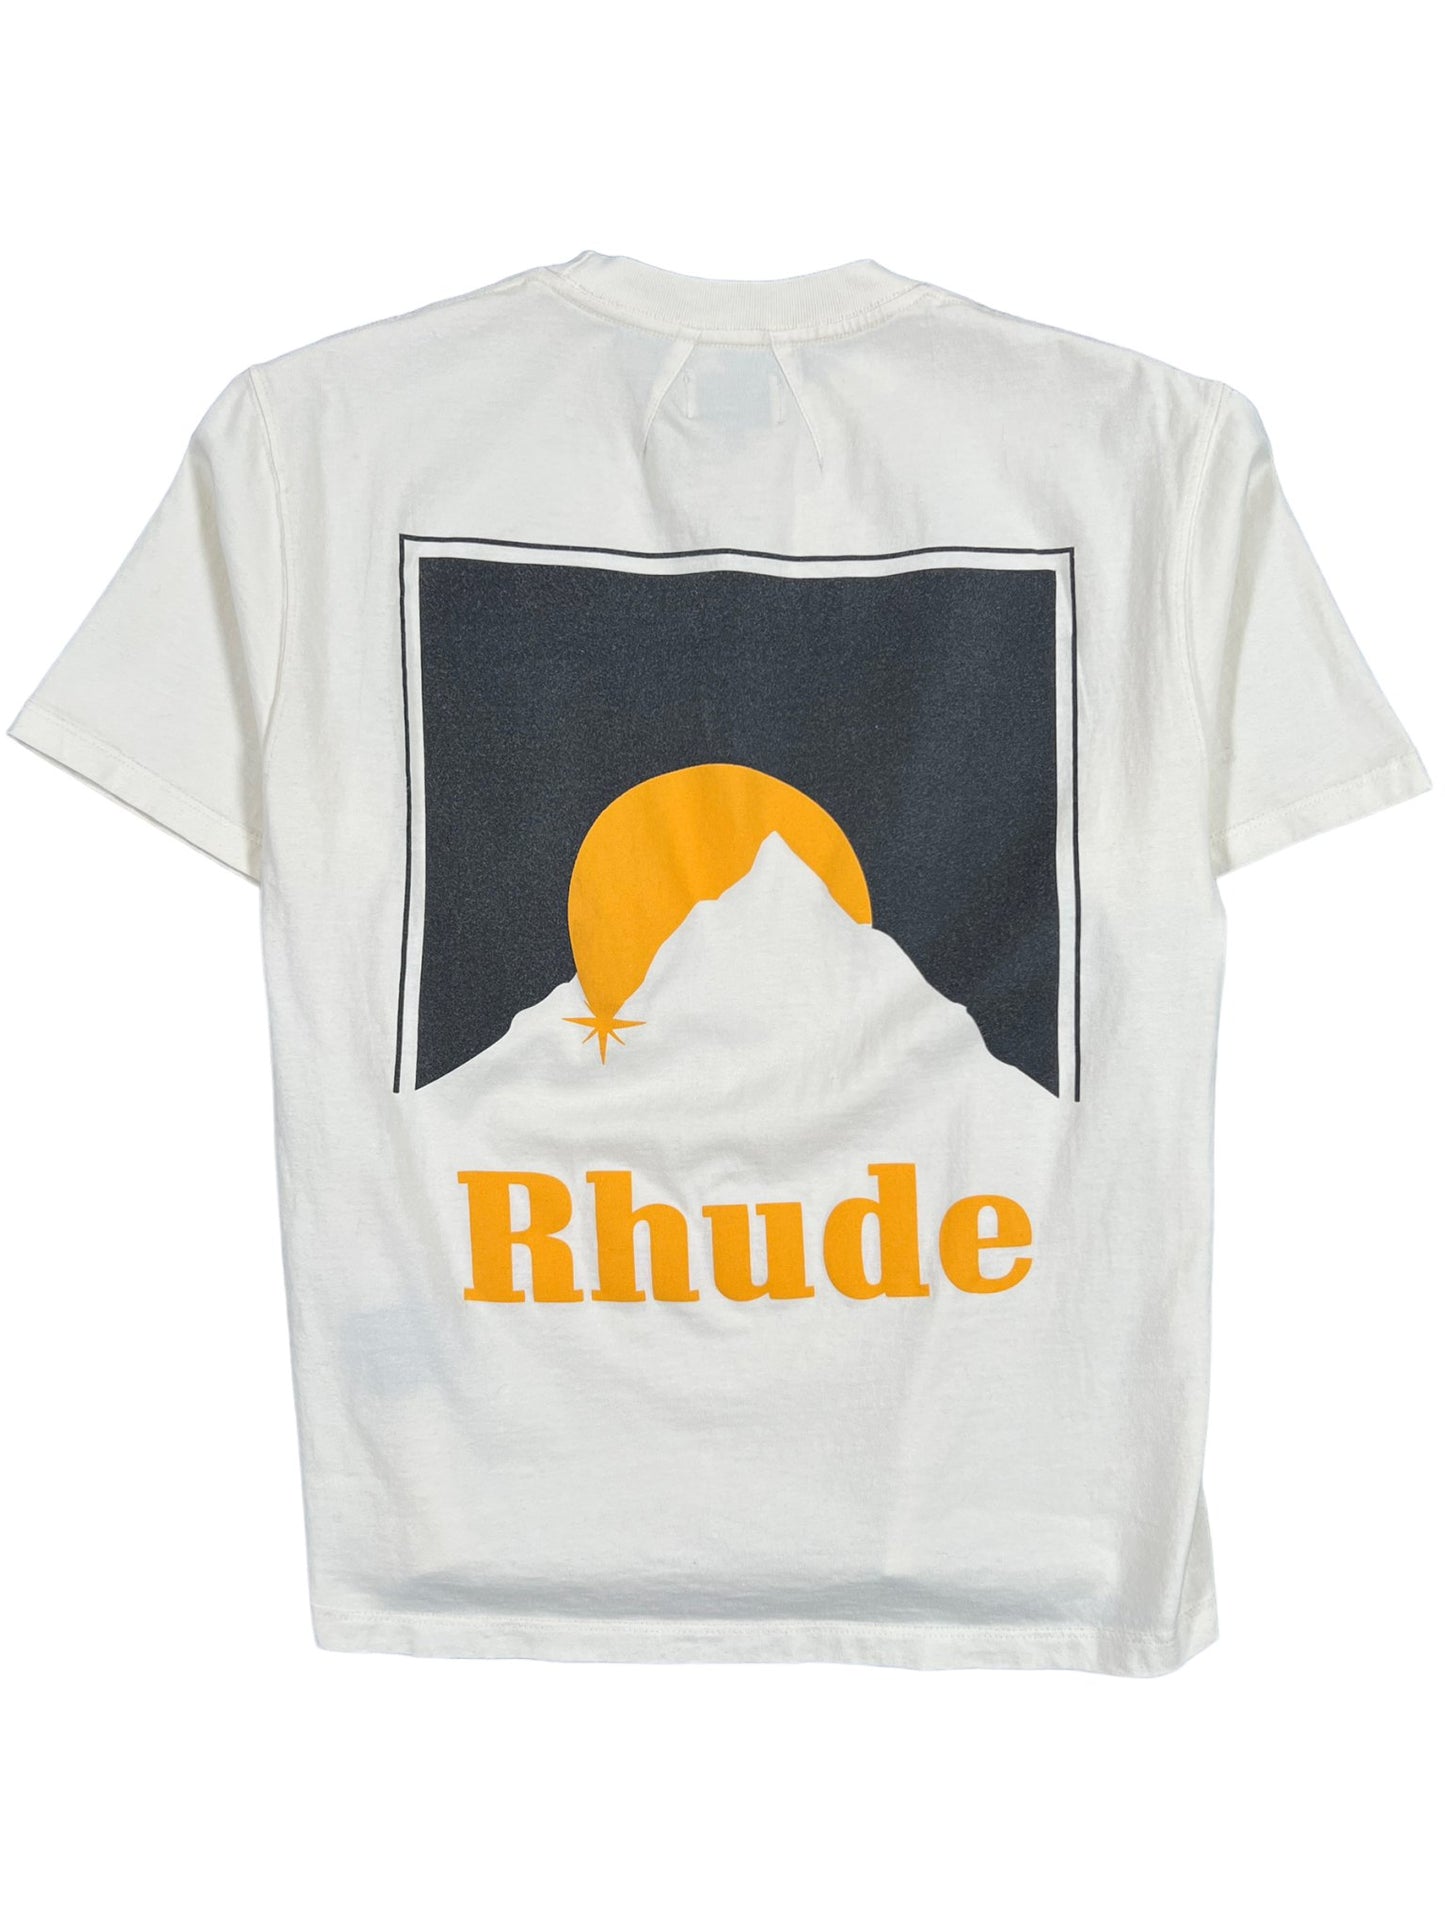 RHUDE Moonlight Tee VTG White - RHUDE.